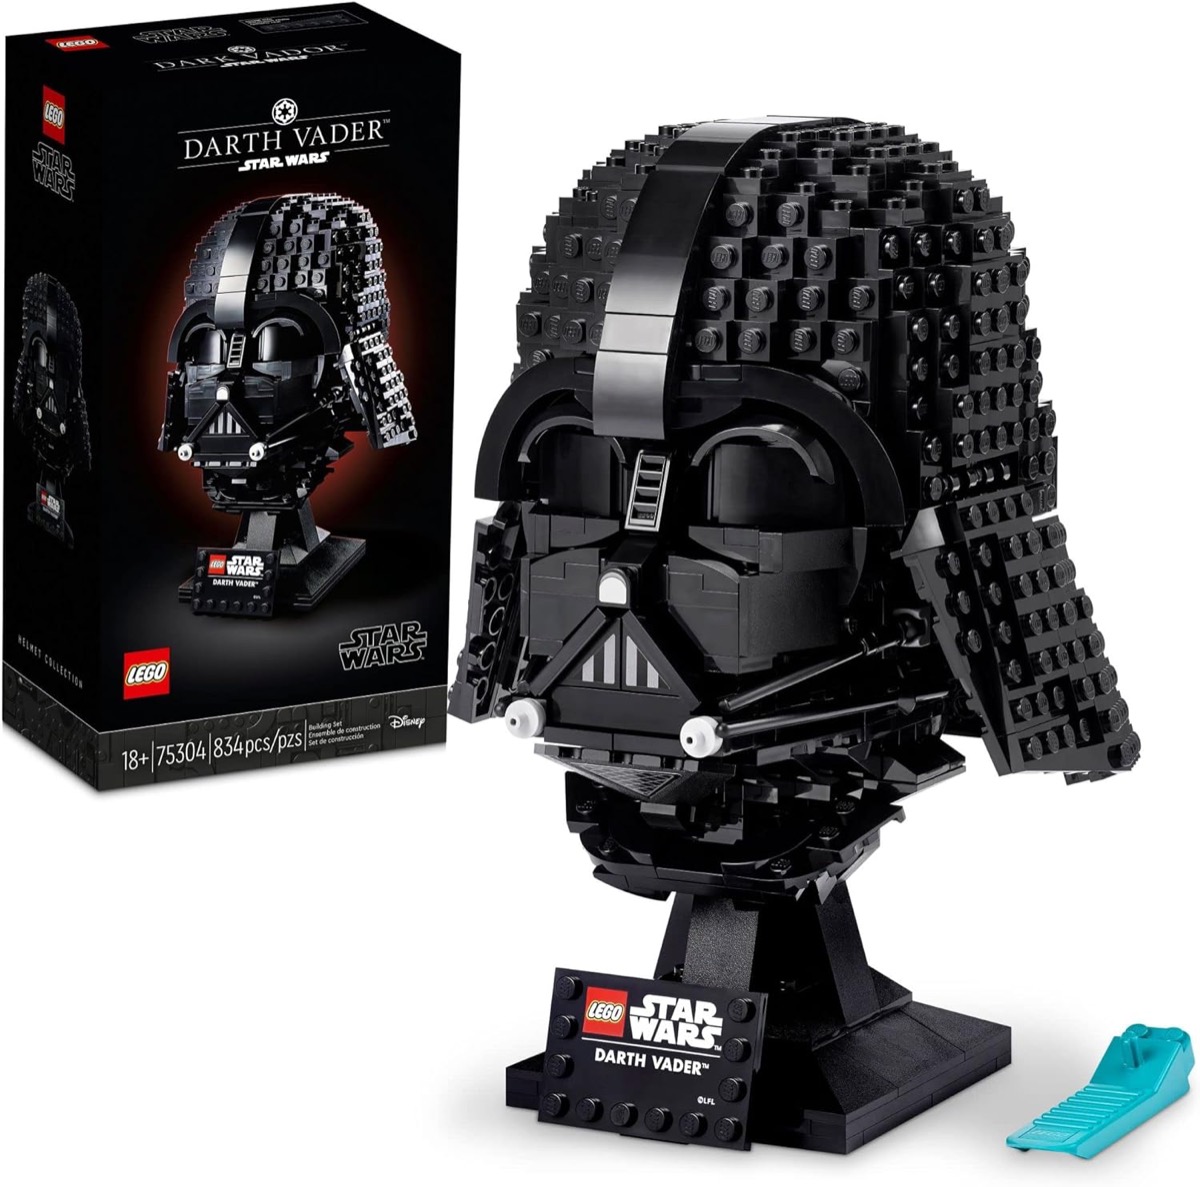 A LEGO version of Darth Vader's helmet from "Star Wars" 